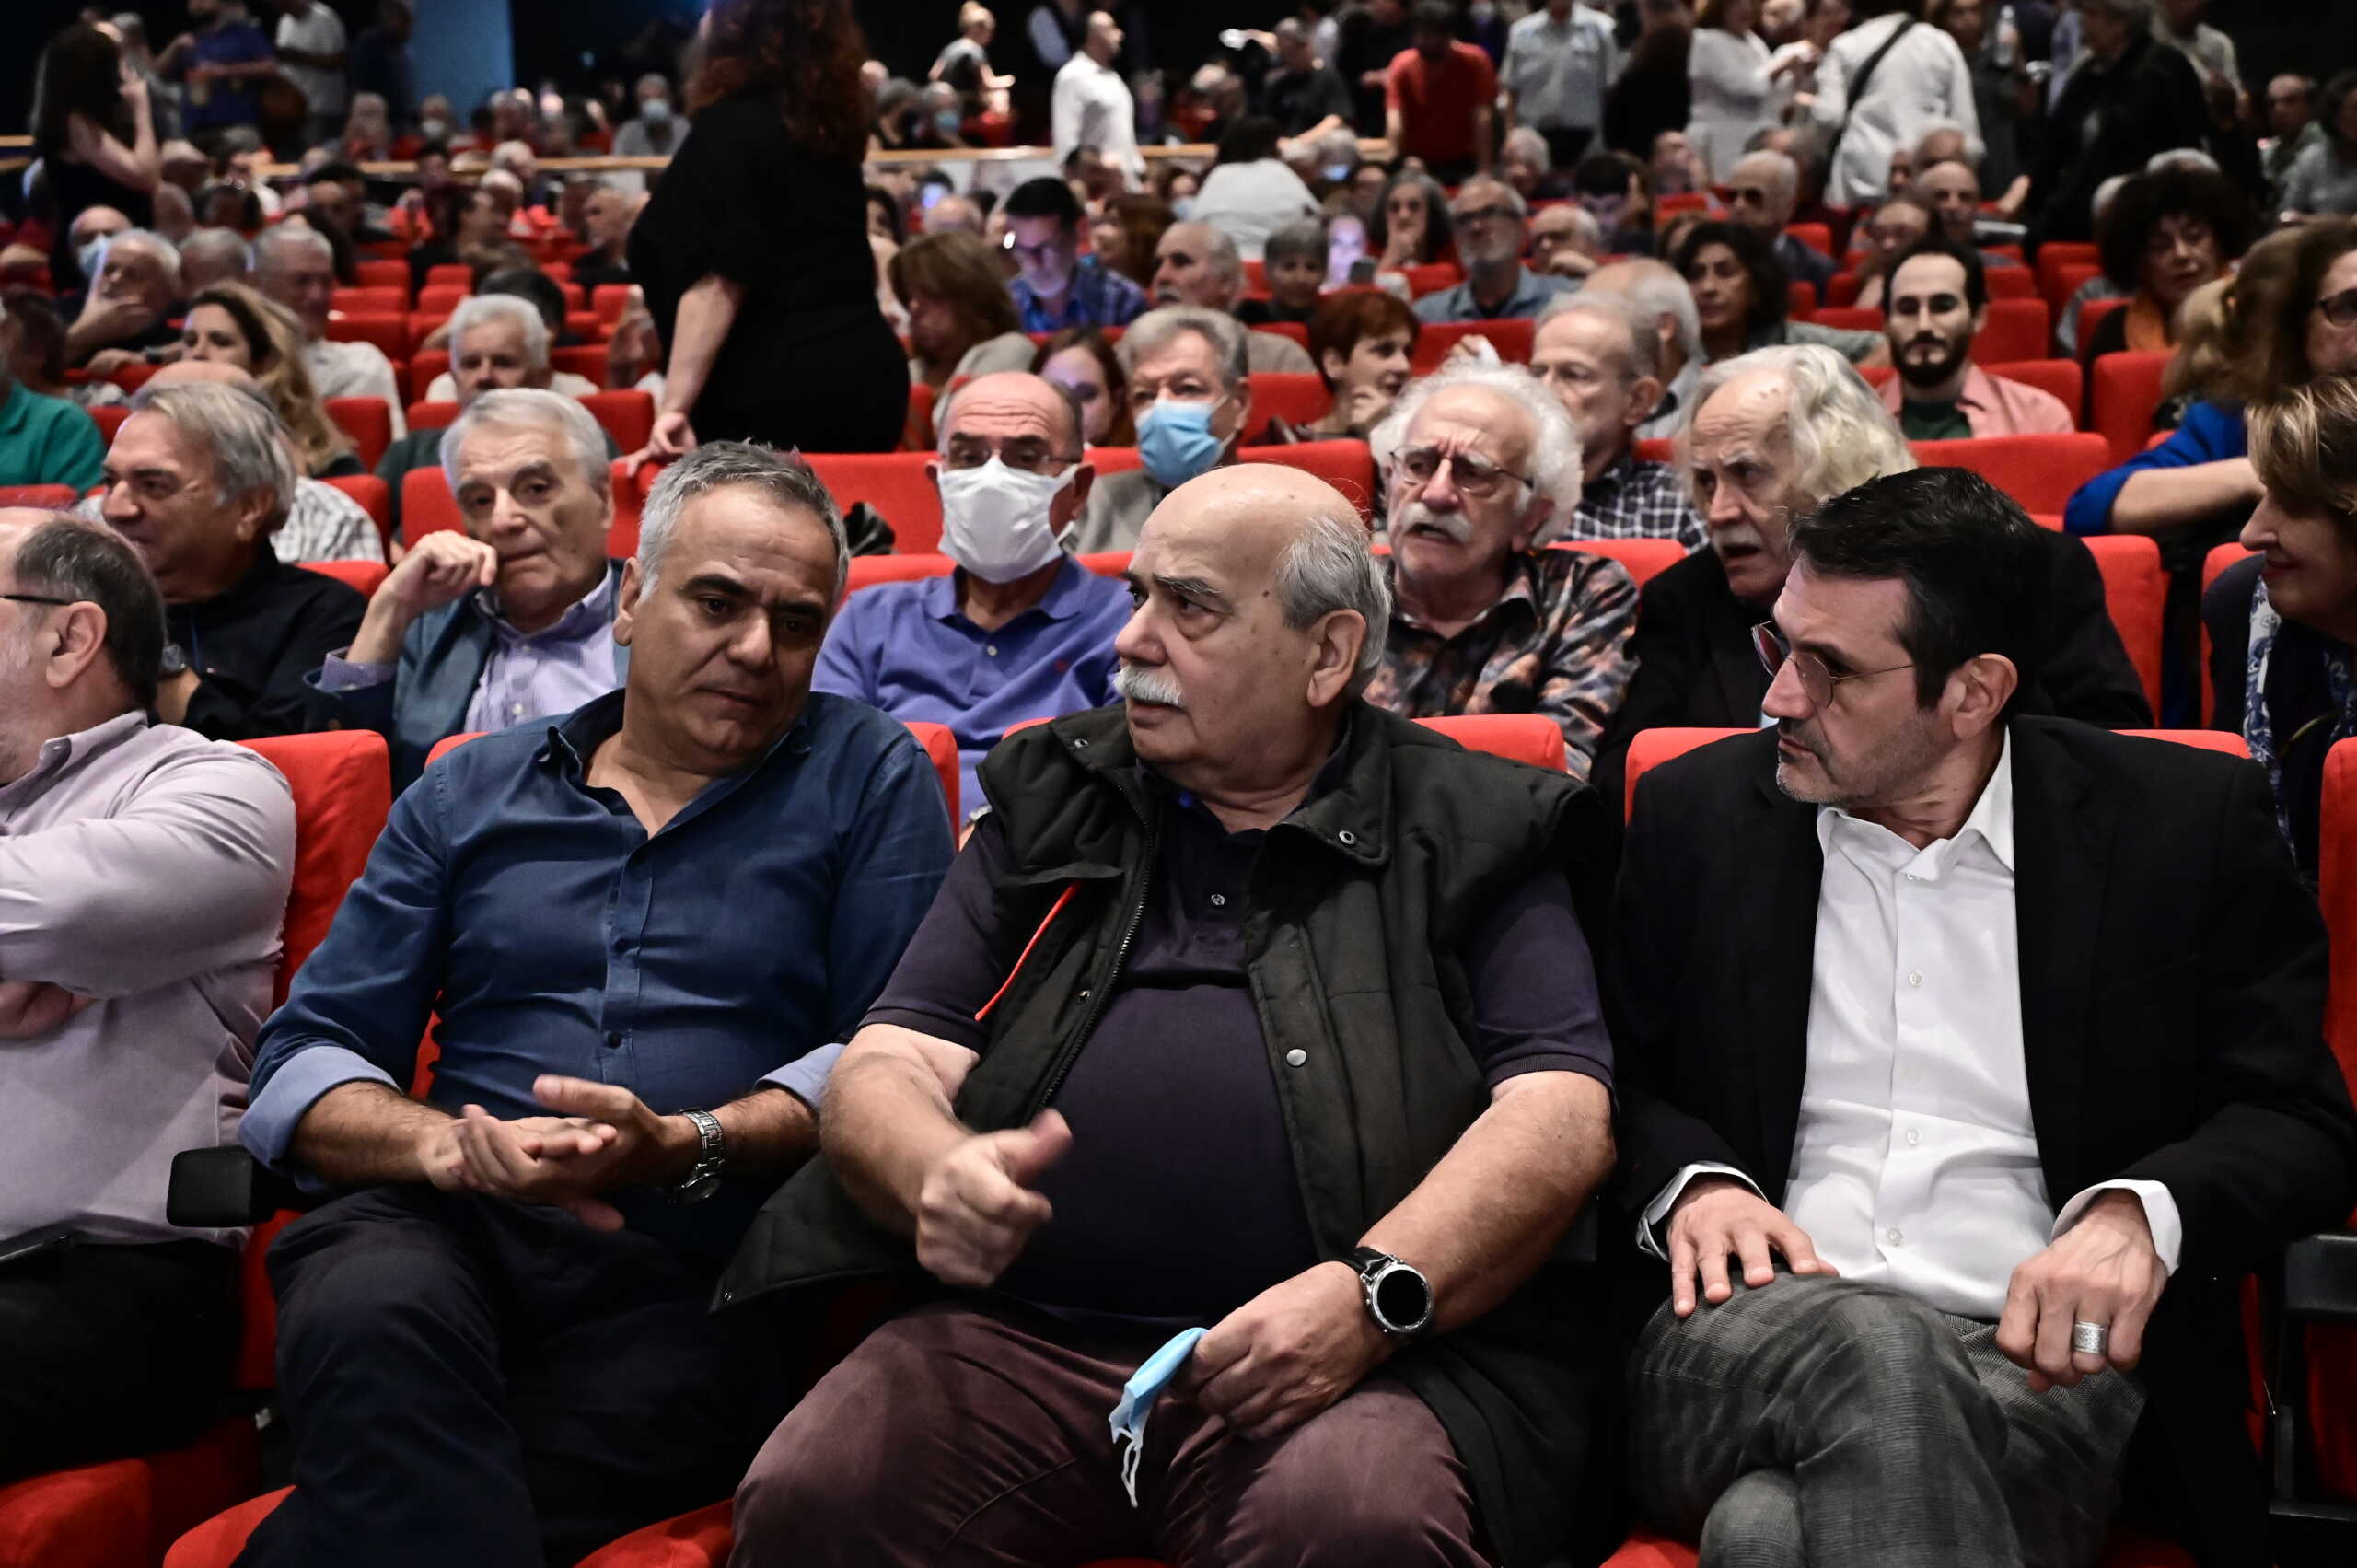 ΣΥΡΙΖΑ: Έτοιμη για το κόμμα Α.Ρ.Α. η Ομπρέλα – «Έχουν τελειώσει όλα τα περιθώρια για συνεννόηση»